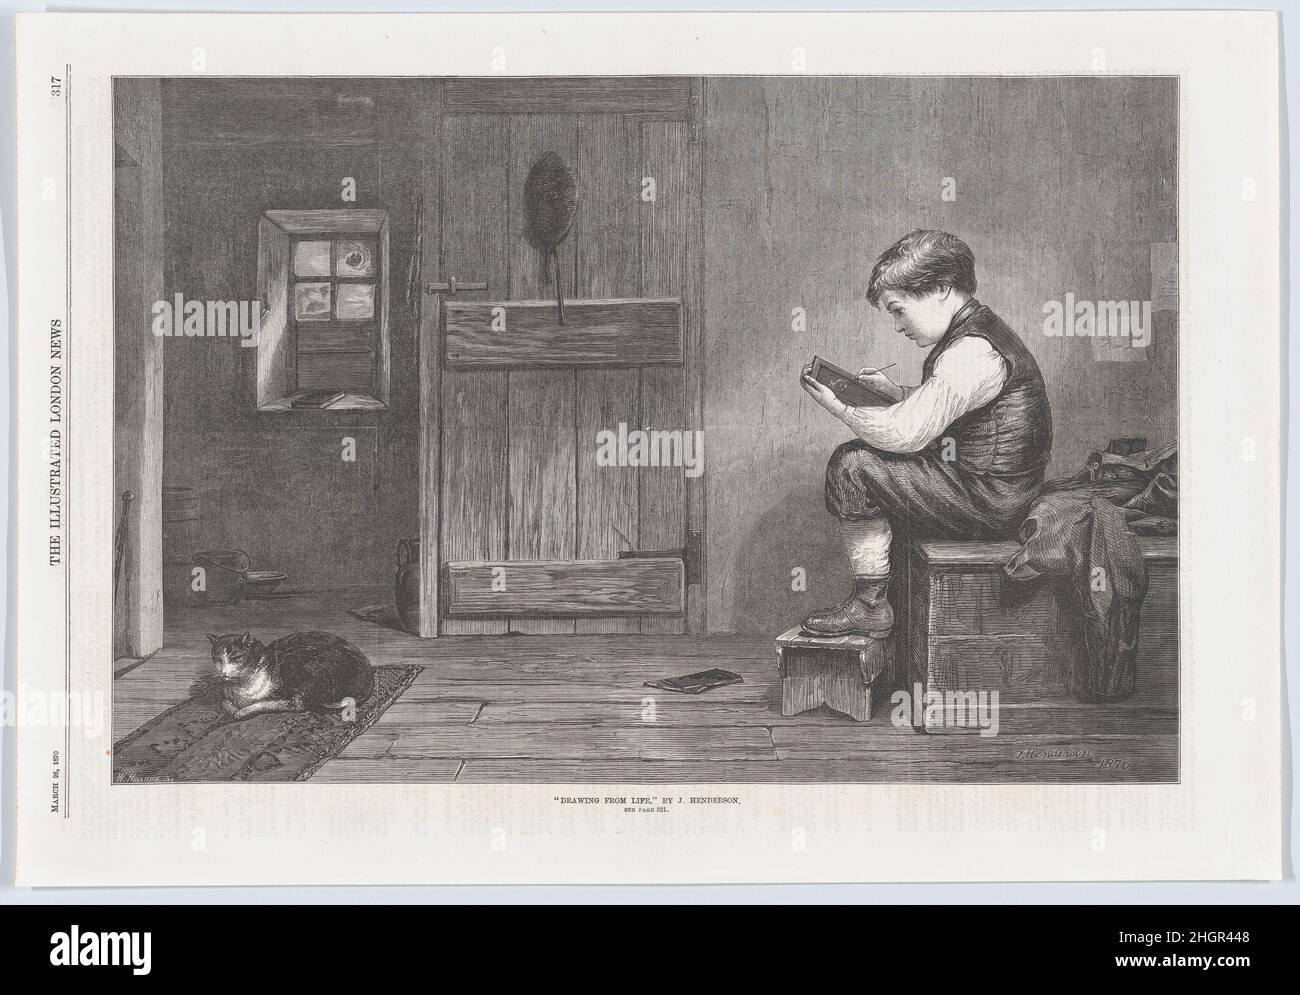 Disegnando dalla vita, da 'Illustrated London News' 26 marzo 1870 William Hollidge in un umile interno scozzese, un ragazzo appena arrivato a casa dalla scuola, ha gettato il cappotto e gli schizzi un gatto addormentato sulla sua ardesia. L'immagine suggerisce che la sua passione iniziale può un giorno guidare un artista maturo ed echeggia gli incidenti dalle prime vite degli artisti famosi-- Vasari, per esempio, registrò che il pittore fiorentino Cimabue scoprì Giotto come pastore, disegnando il suo gregge su una roccia, poi lo portò come apprendista. Pubblicata nel 'Illustrated London News' nel 1870, questa incisione in legno è stata desig Foto Stock